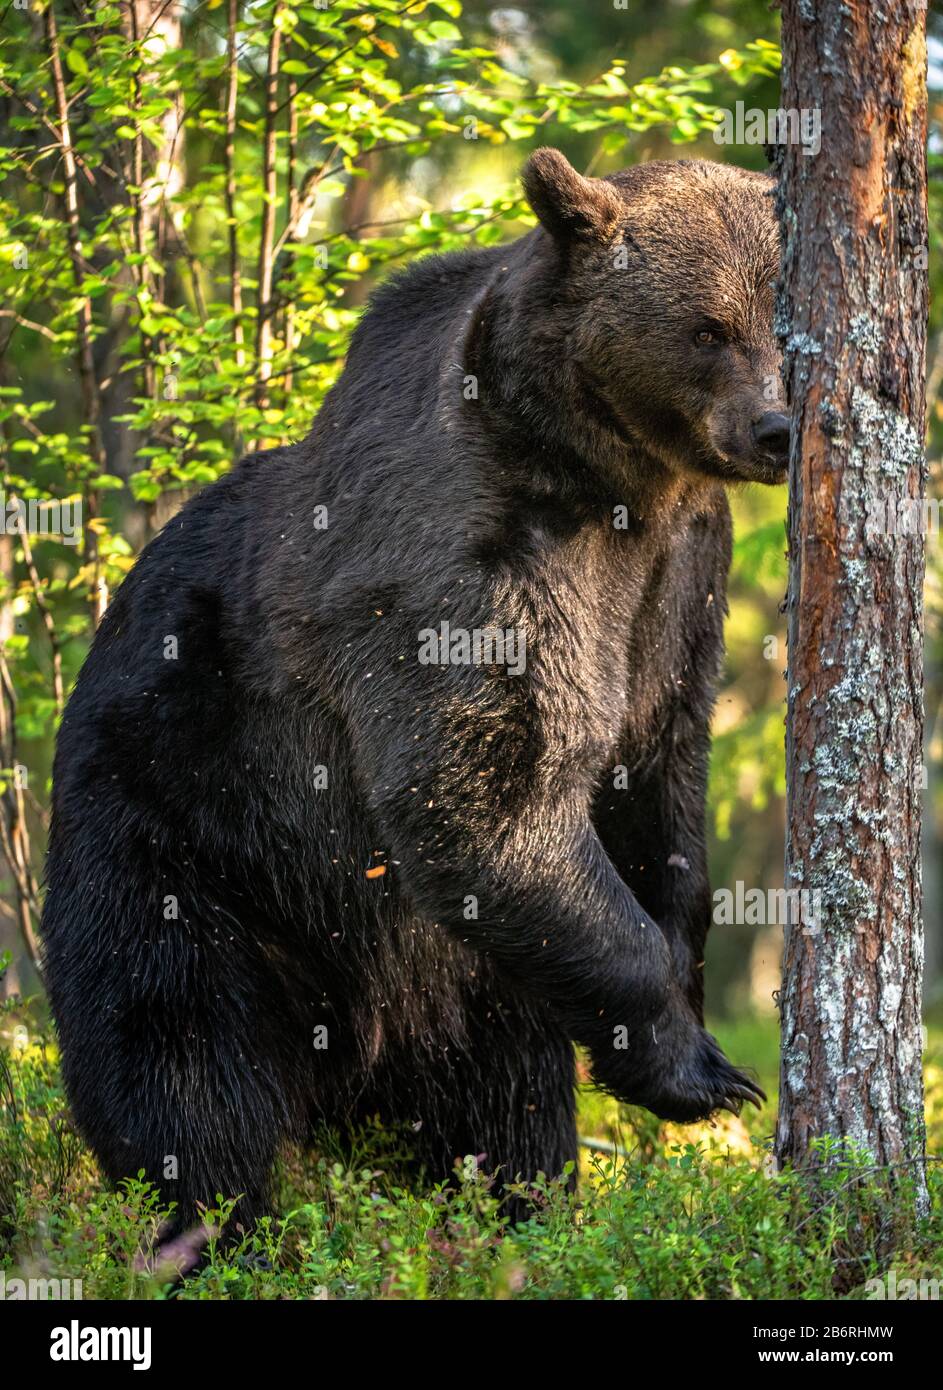 L'ours brun se tient sur ses pattes arrière par un arbre dans une forêt de pins. Mâle adulte d'ours brun dans la forêt de pins d'automne. Nom scientifique: Ursus arctos. Nat Banque D'Images